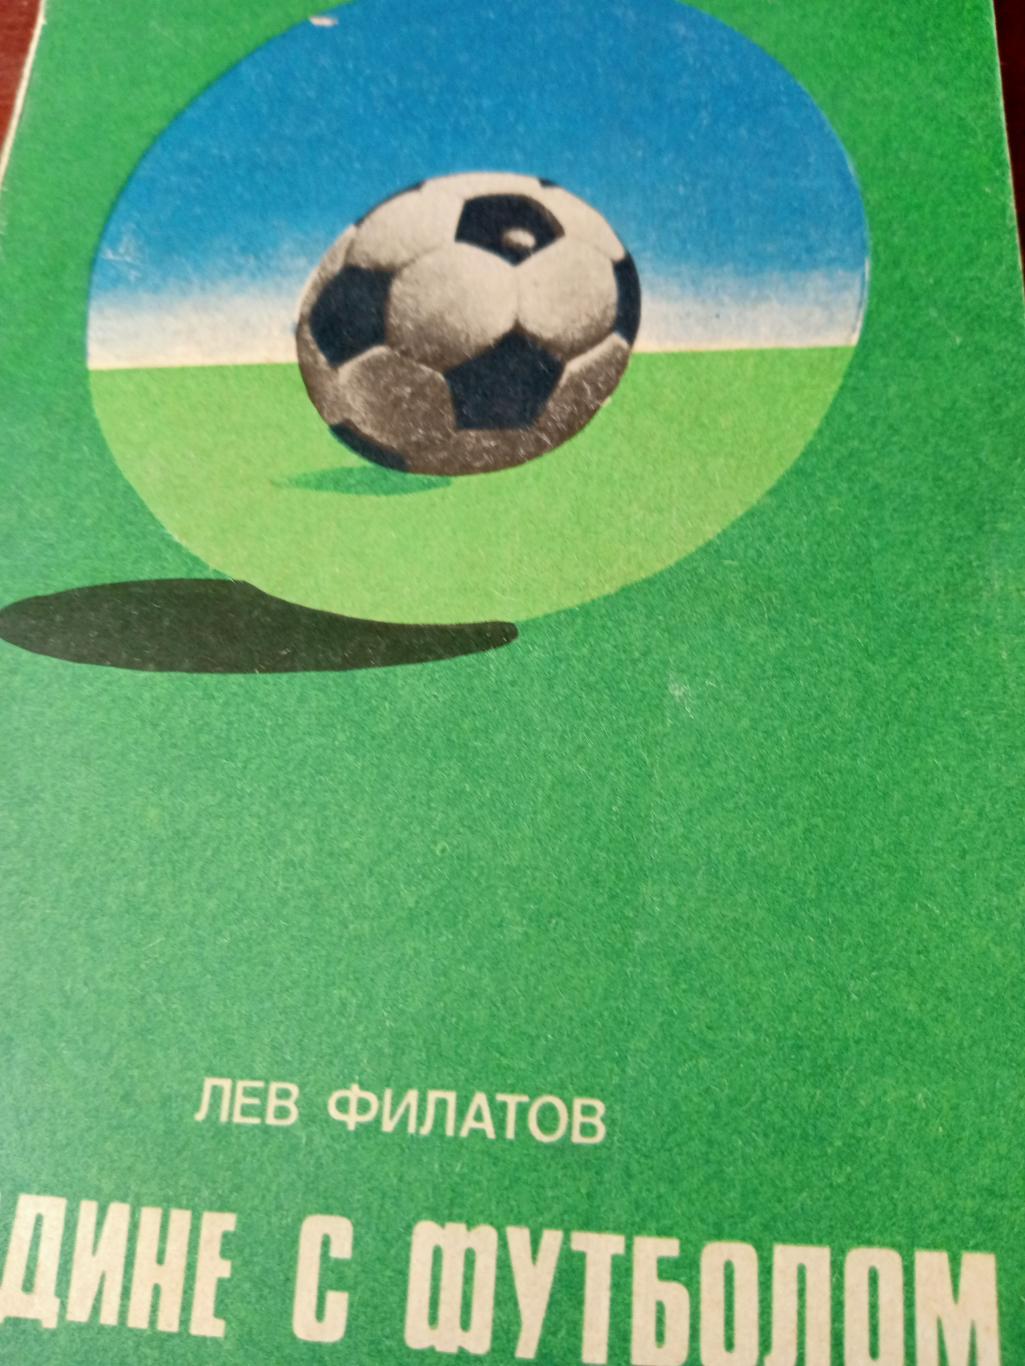 Лев Филатов. Наедине с футболом. Издано в Москве, 1977 год